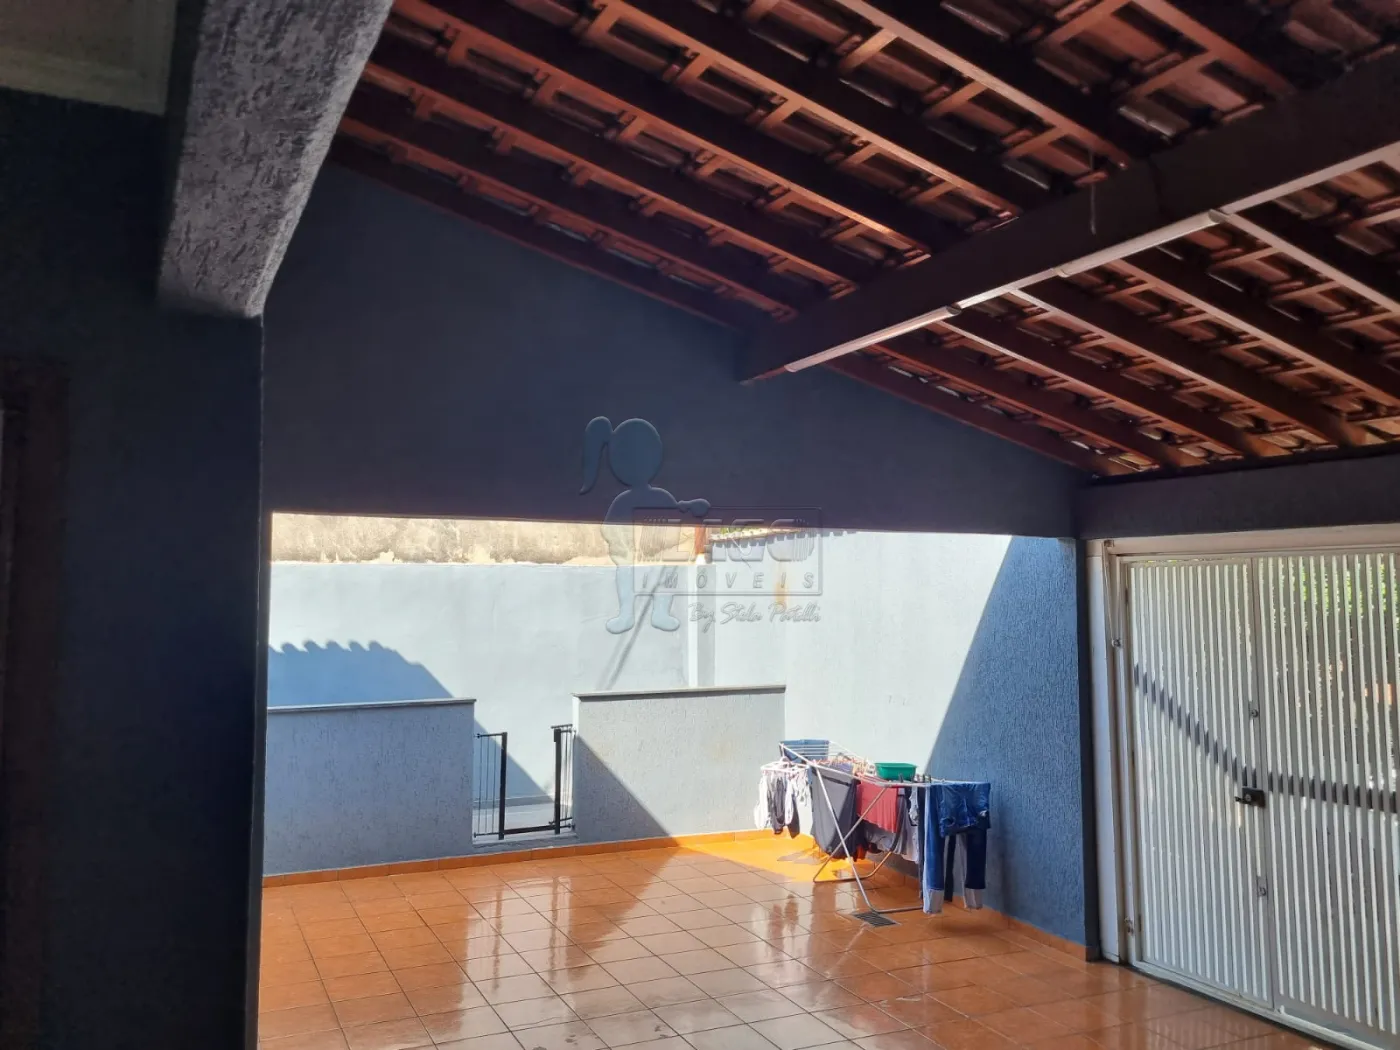 Comprar Casas / Padrão em Ribeirão Preto R$ 265.000,00 - Foto 4